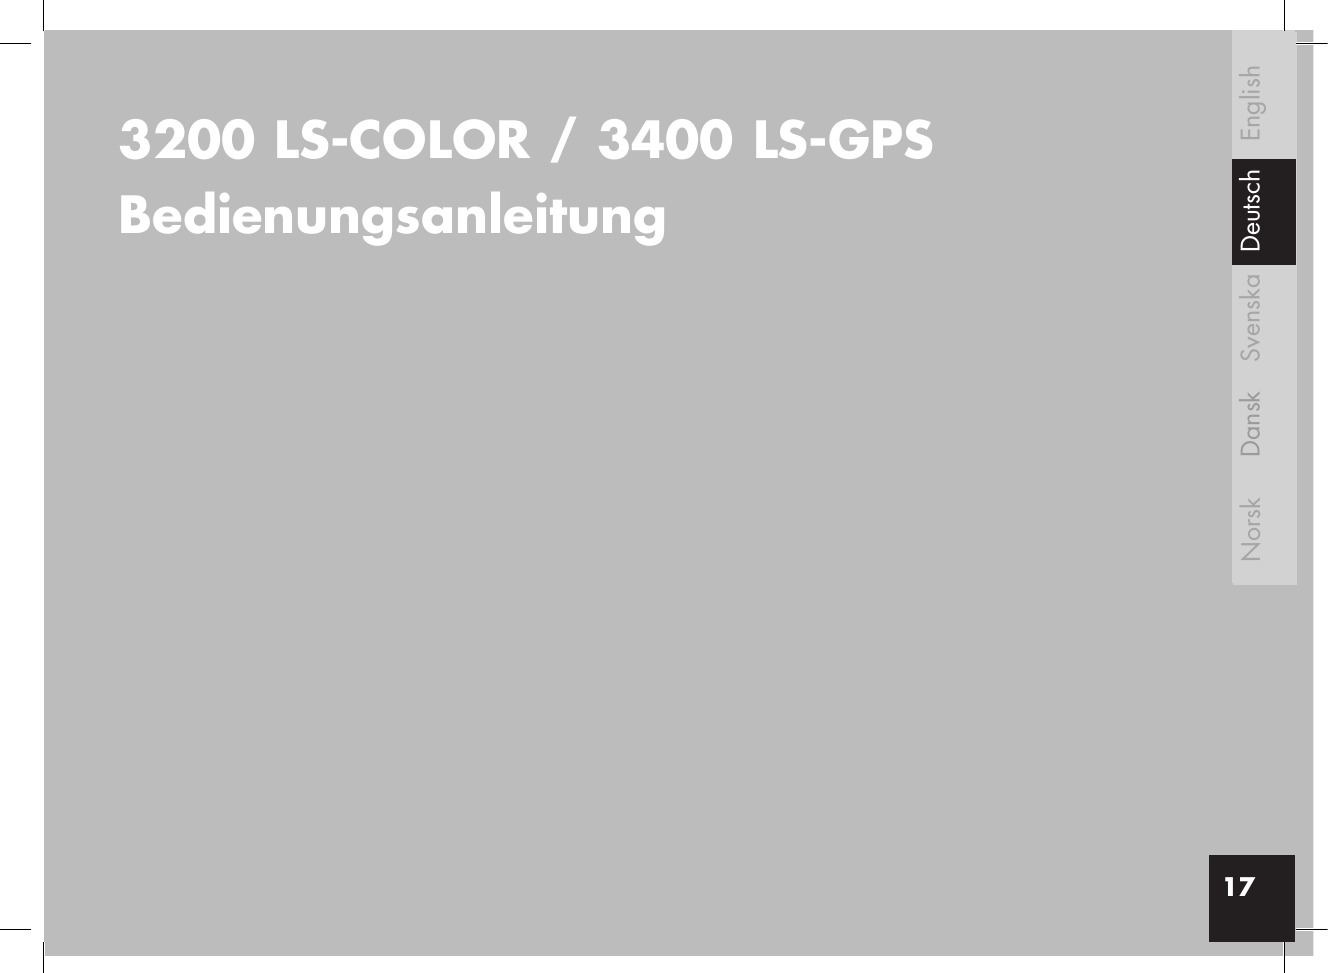 3200 LS-COLOR / 3400 LS-GPSBedienungsanleitung 17EnglishSvenskaDanskNorsk Deutsch